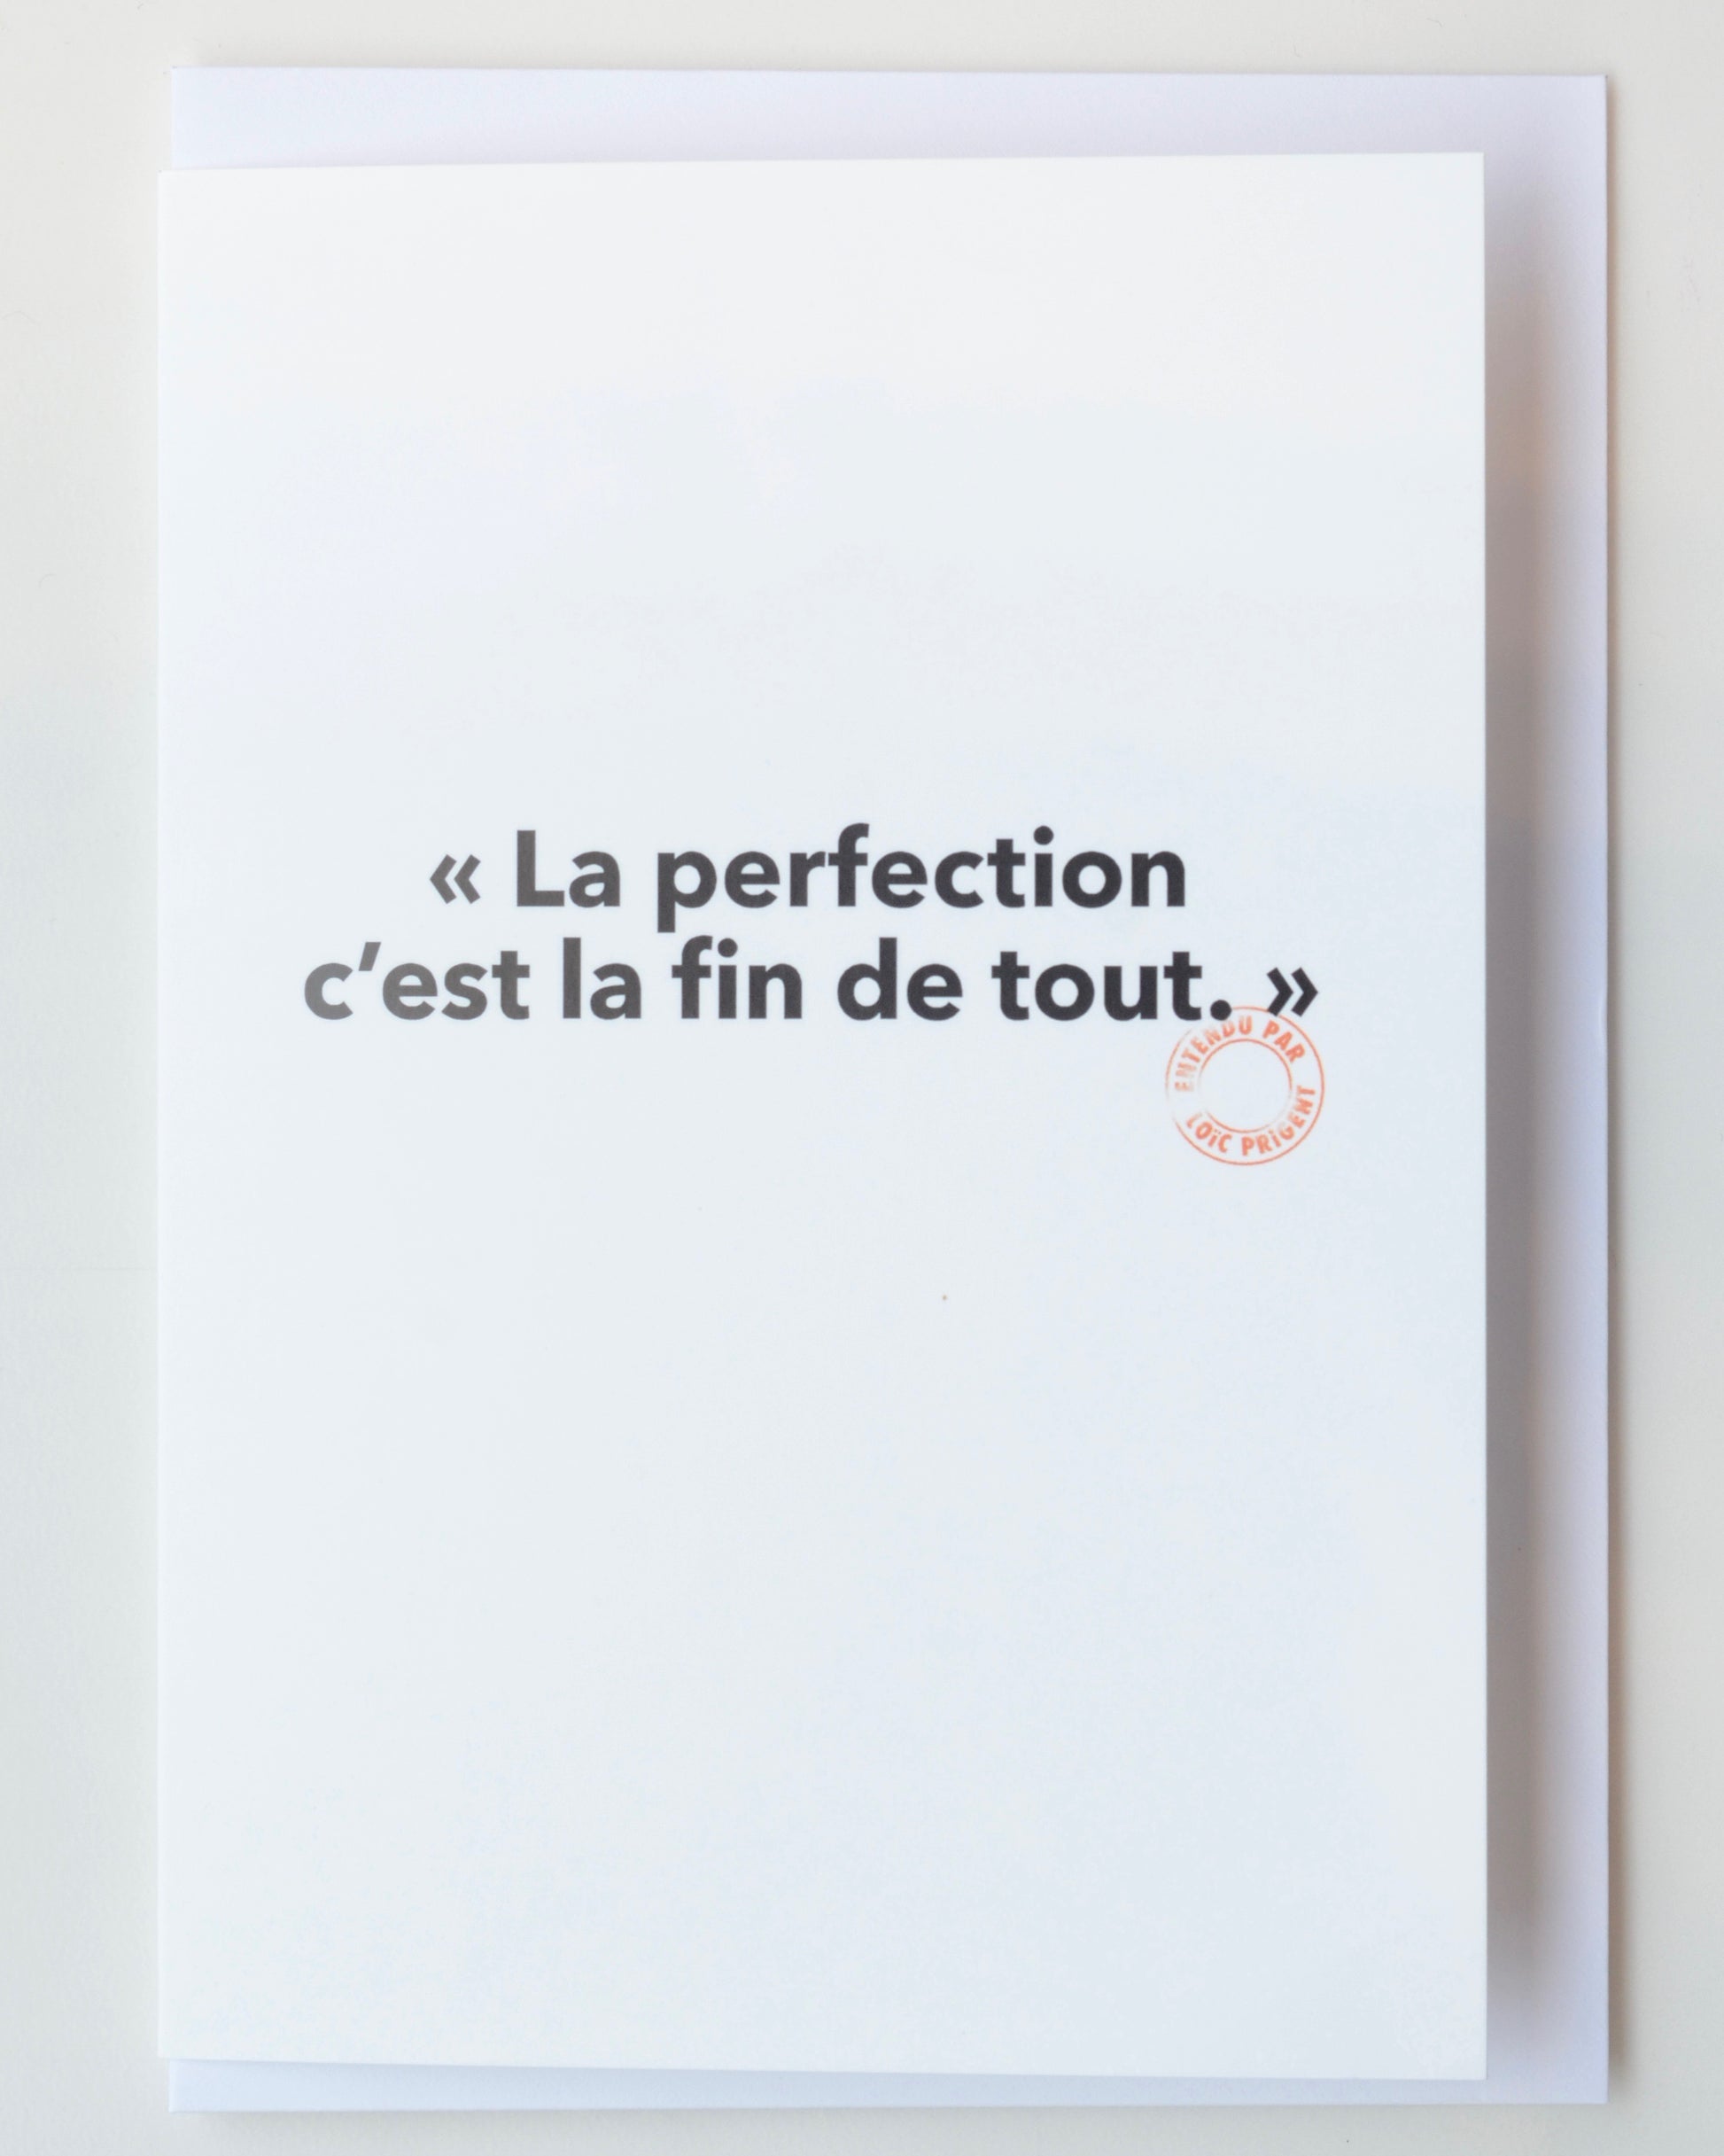 Carte postale 10x15 cm "La perfection" - collection Loic Prigent - Image Republic